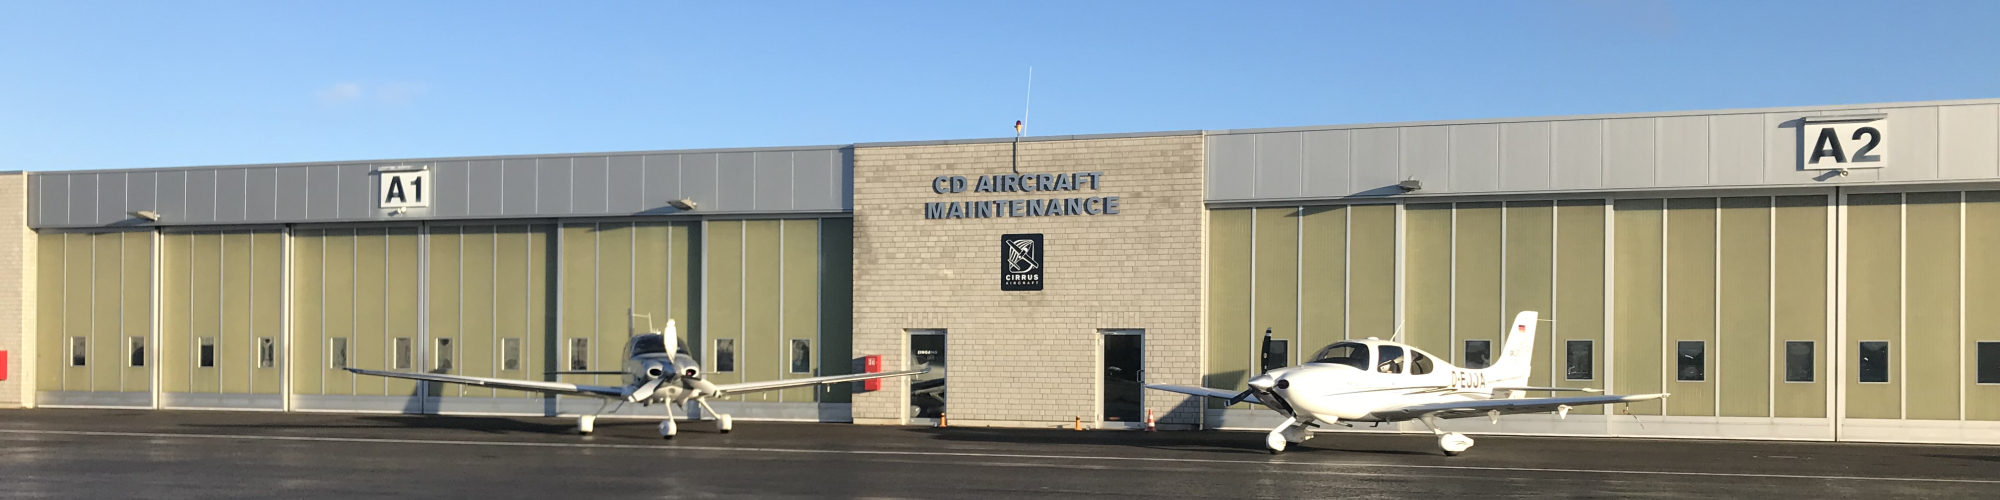 CD Aircraft Maintenance GmbH